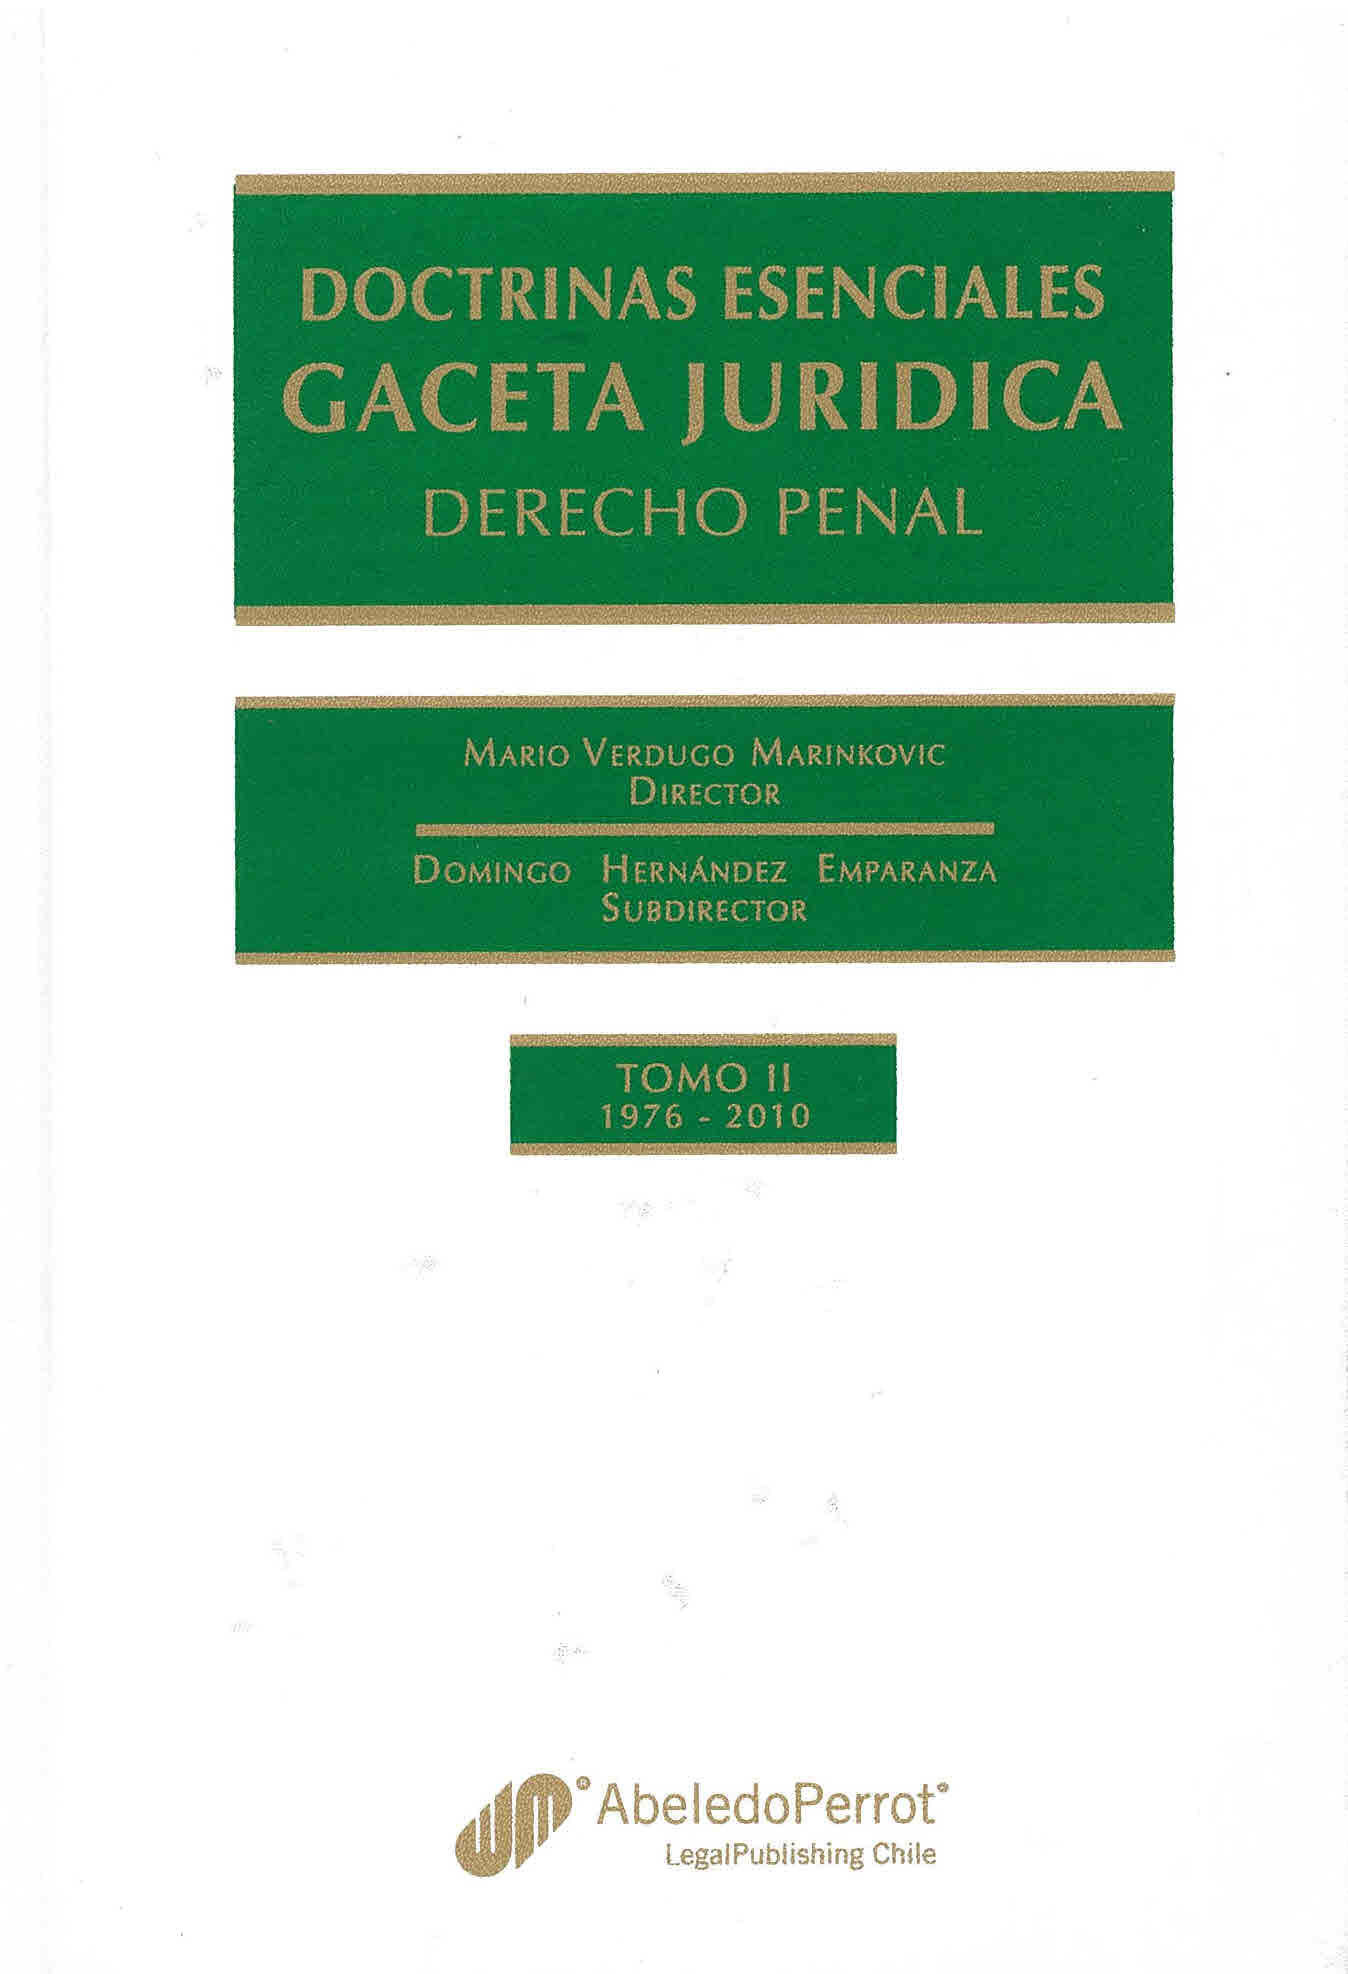 Doctrinas esenciales Gaceta jurídica. Derecho penal 